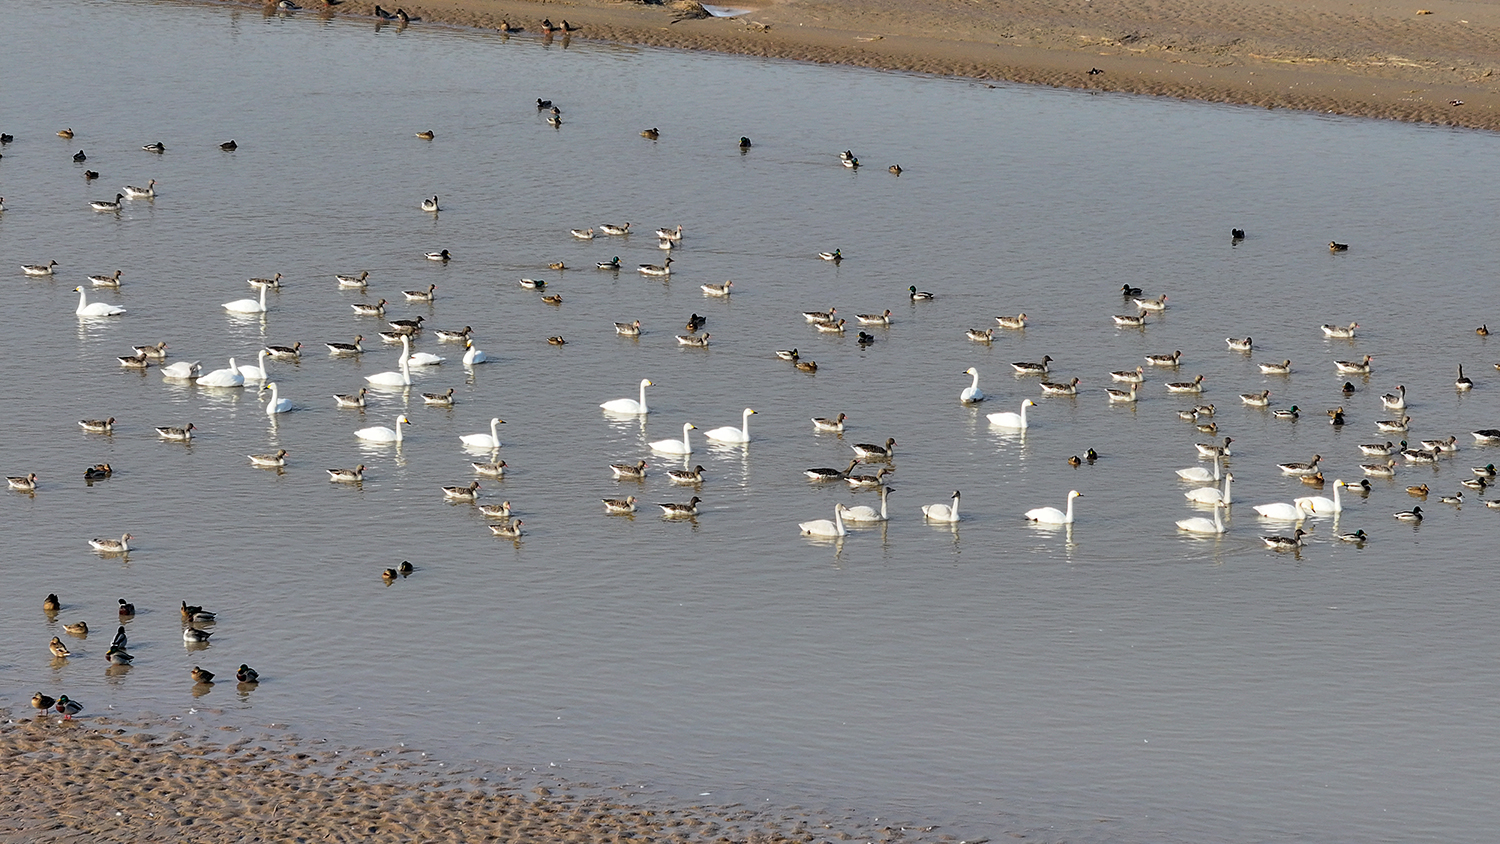 鸟儿在湿地中游弋觅食。陈春明 摄